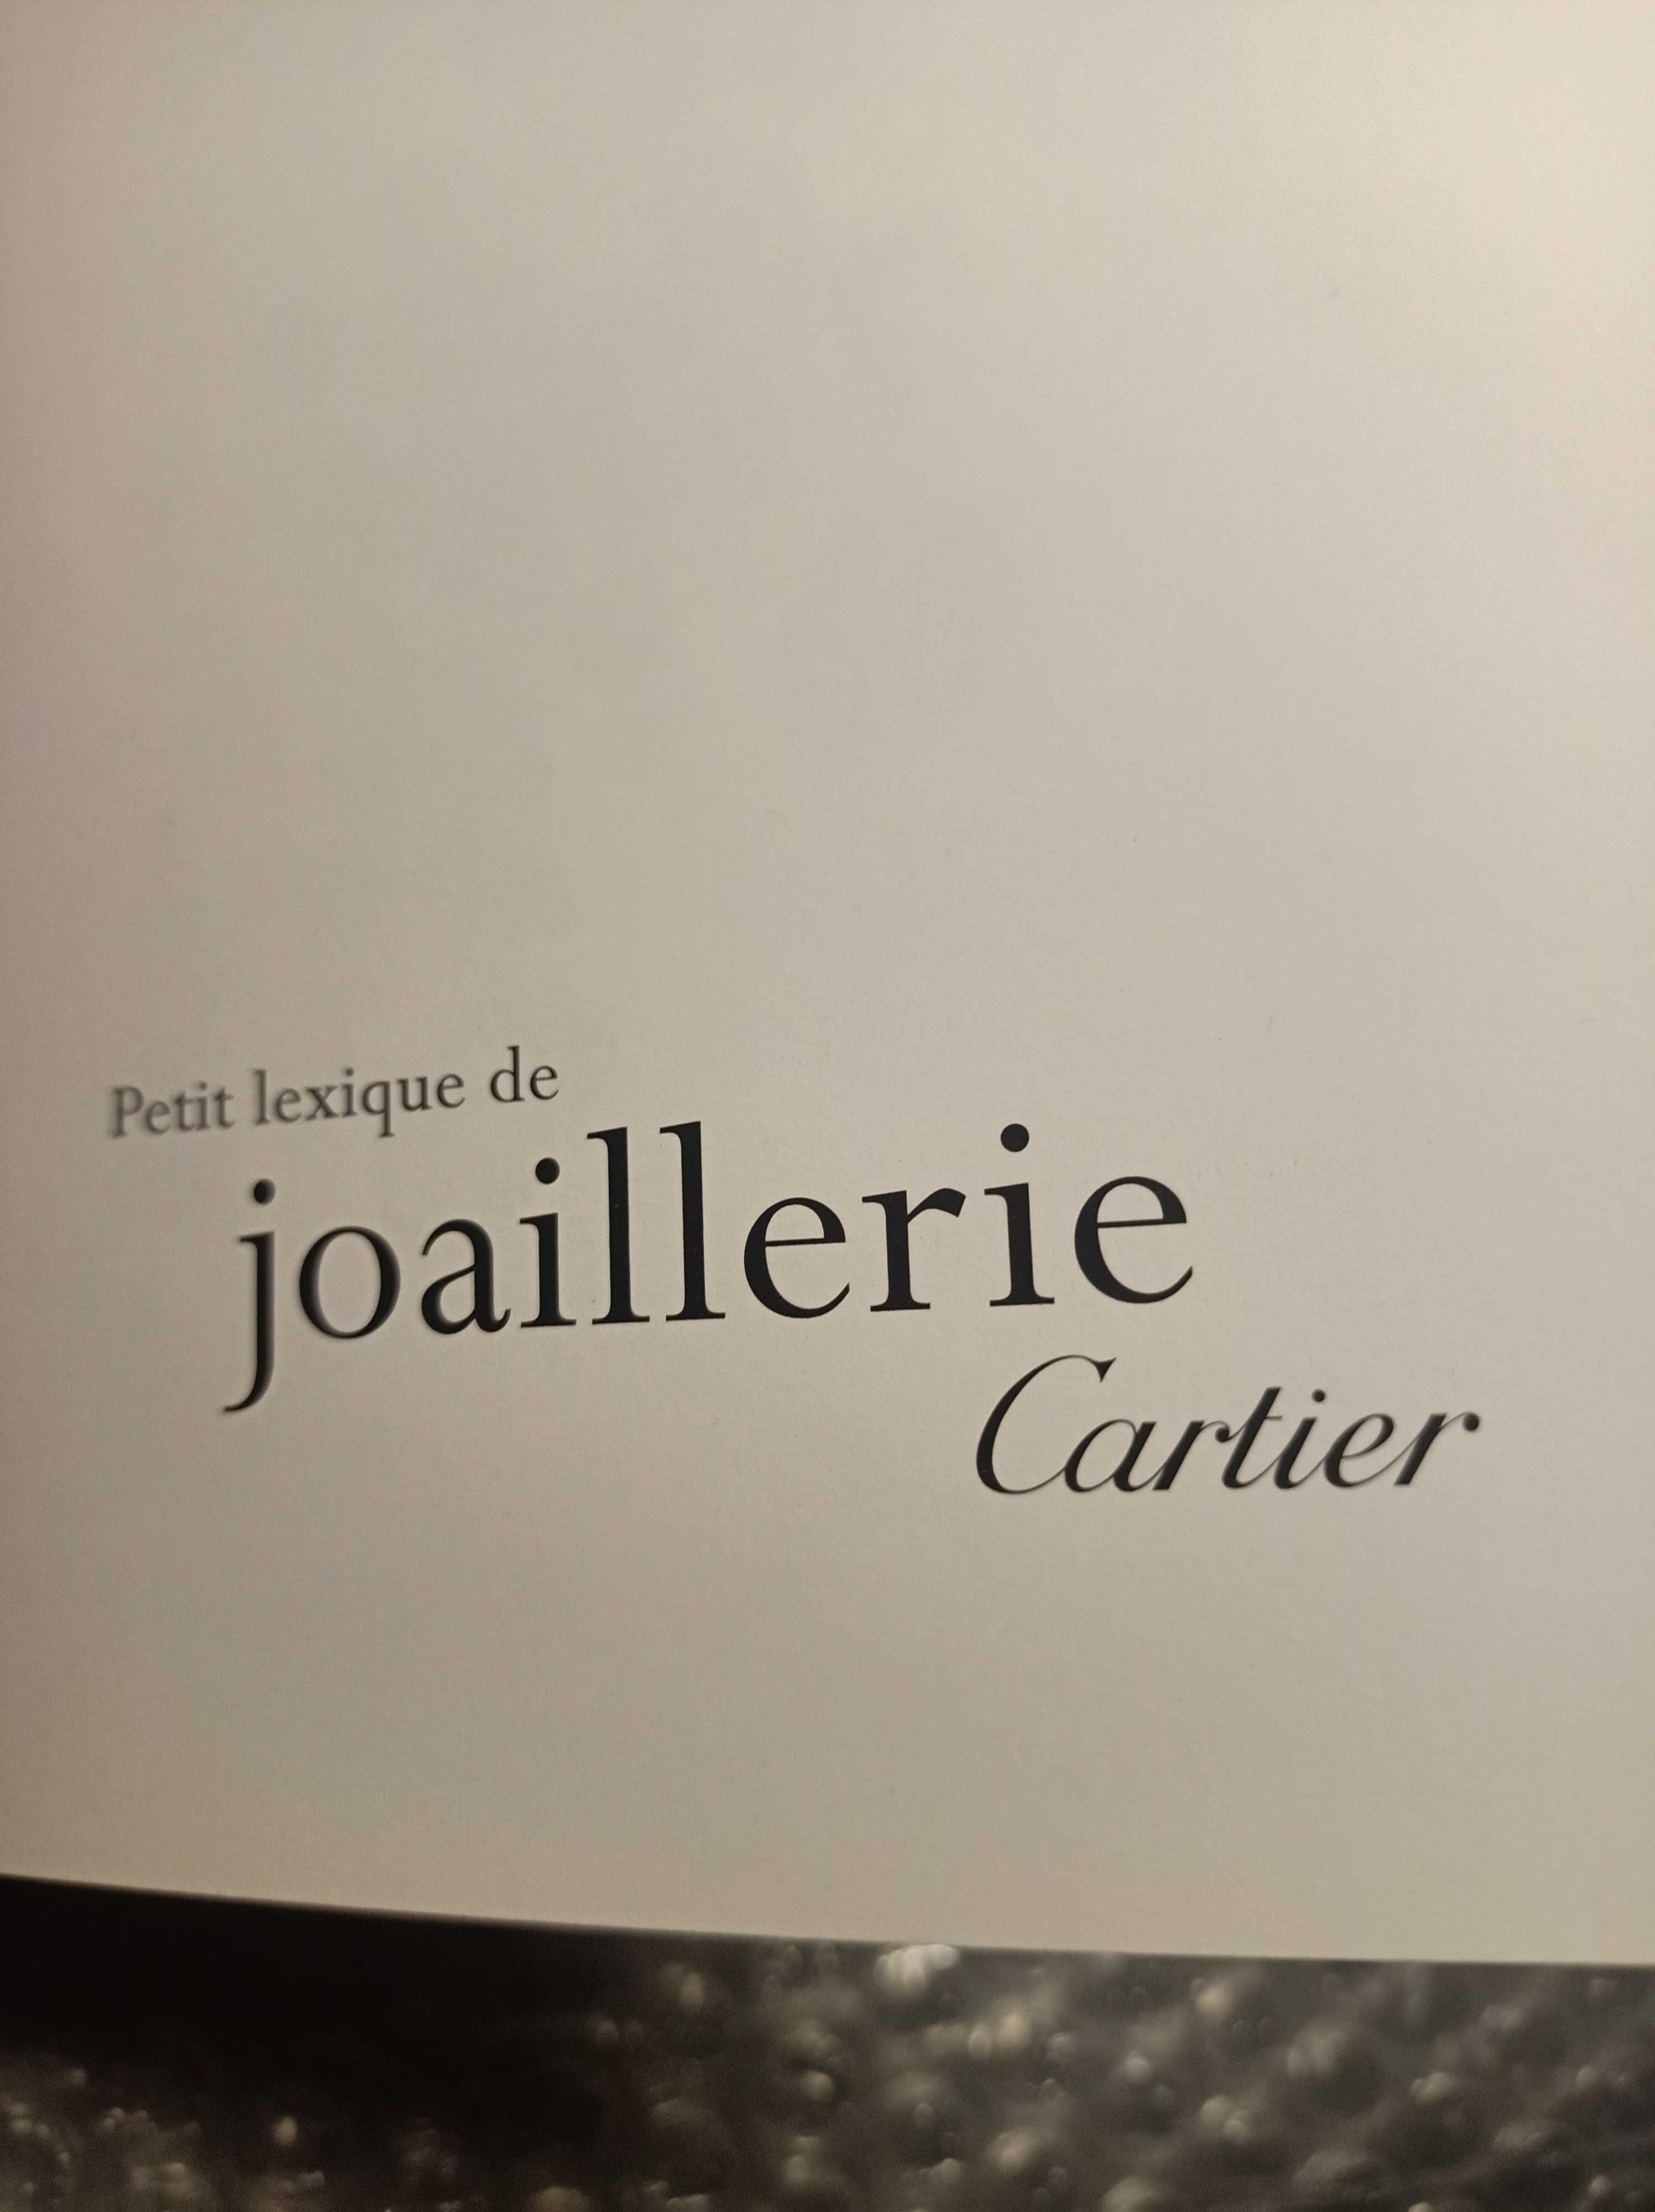 Ювелирный словарь
КАРТЬЕ- petit lexique de joaillerie Cartier